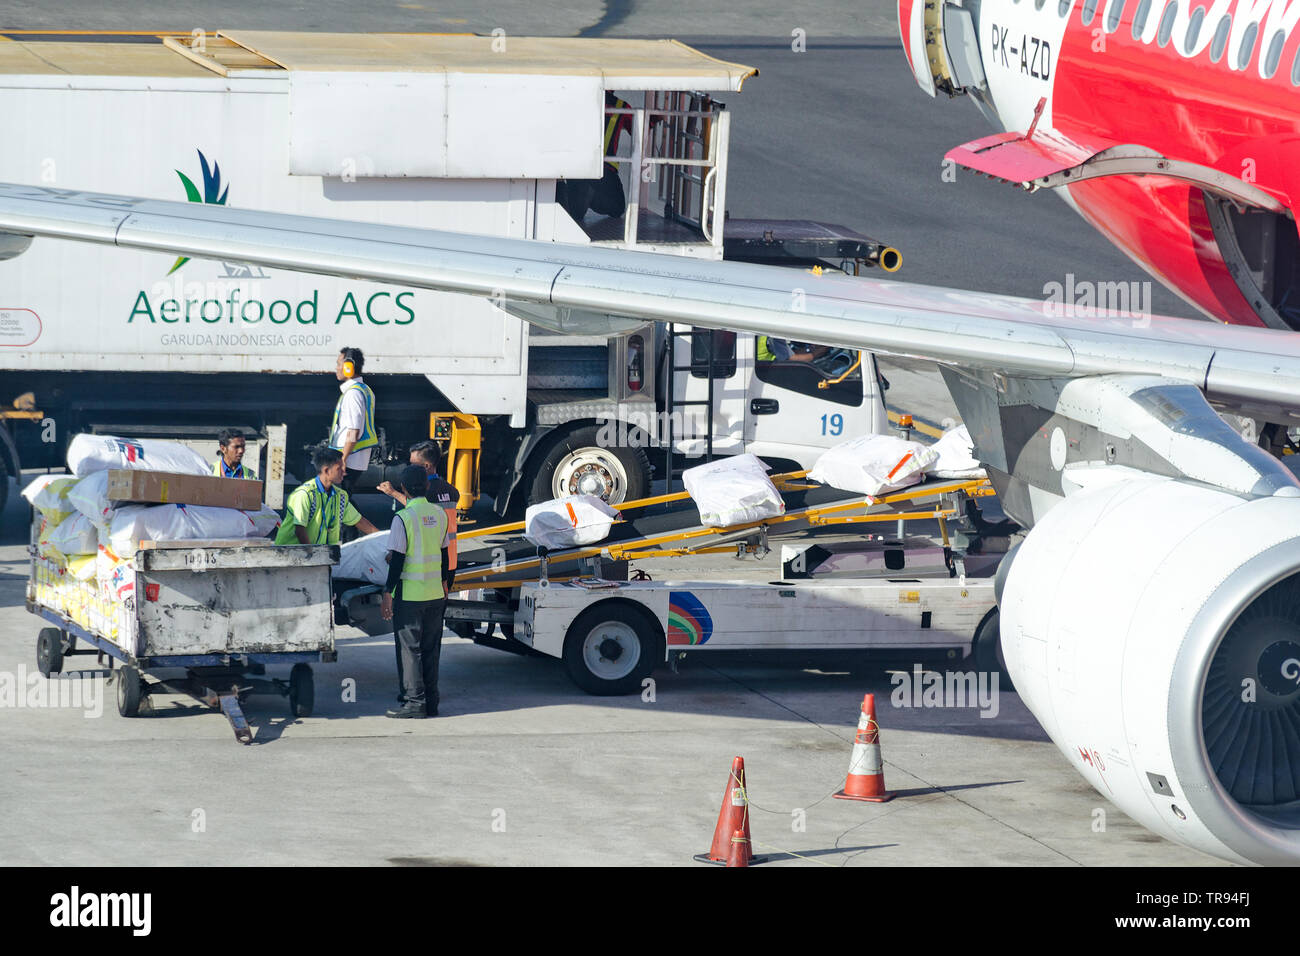 Bali, Denpasar, 2018-05-01: los trabajadores del aeropuerto de carga suministros de catering en los aviones. El personal de tierra pone el embalaje con alimentos de ACS Aerofood Foto de stock